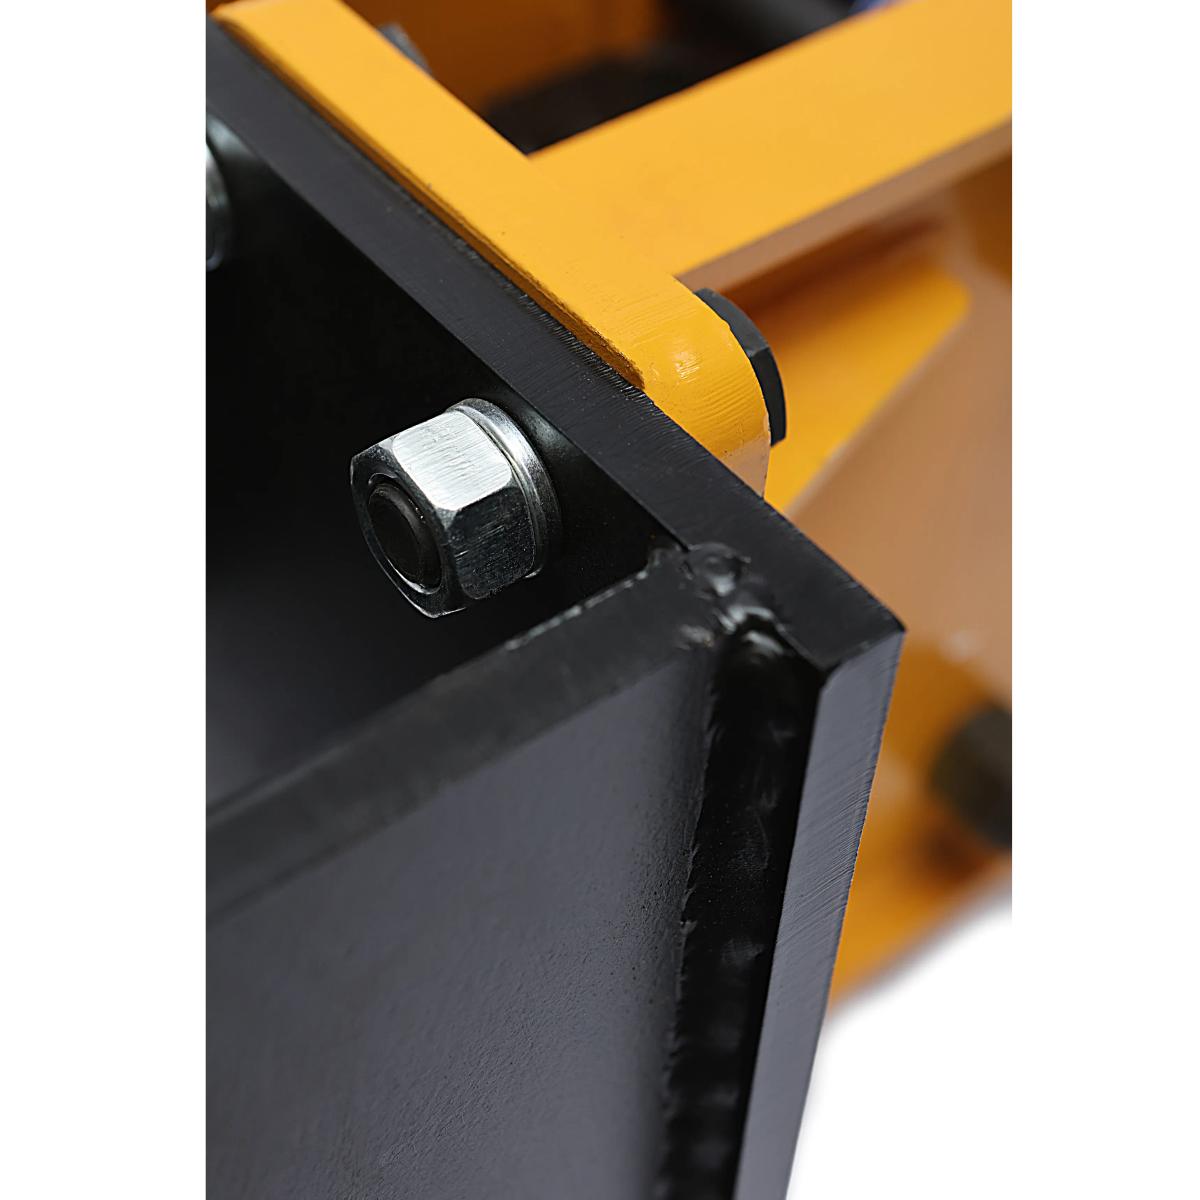 Value Industrial Skid Steer Hydraulic Breaker - highly durable